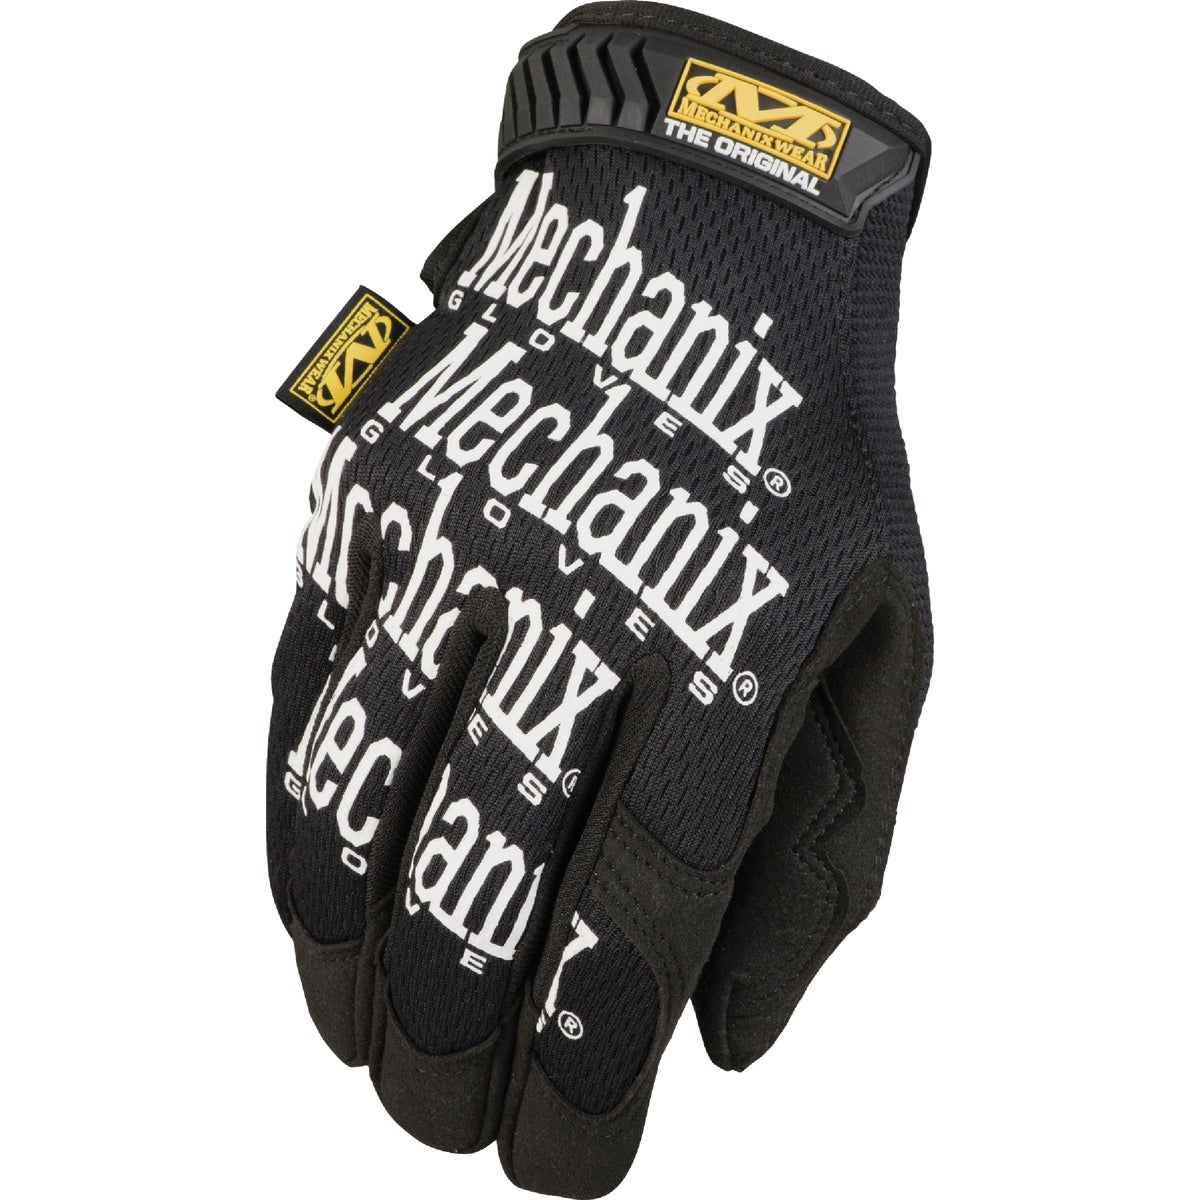 MG-02-010 Mechanix Wear Mens Original Work Gloves